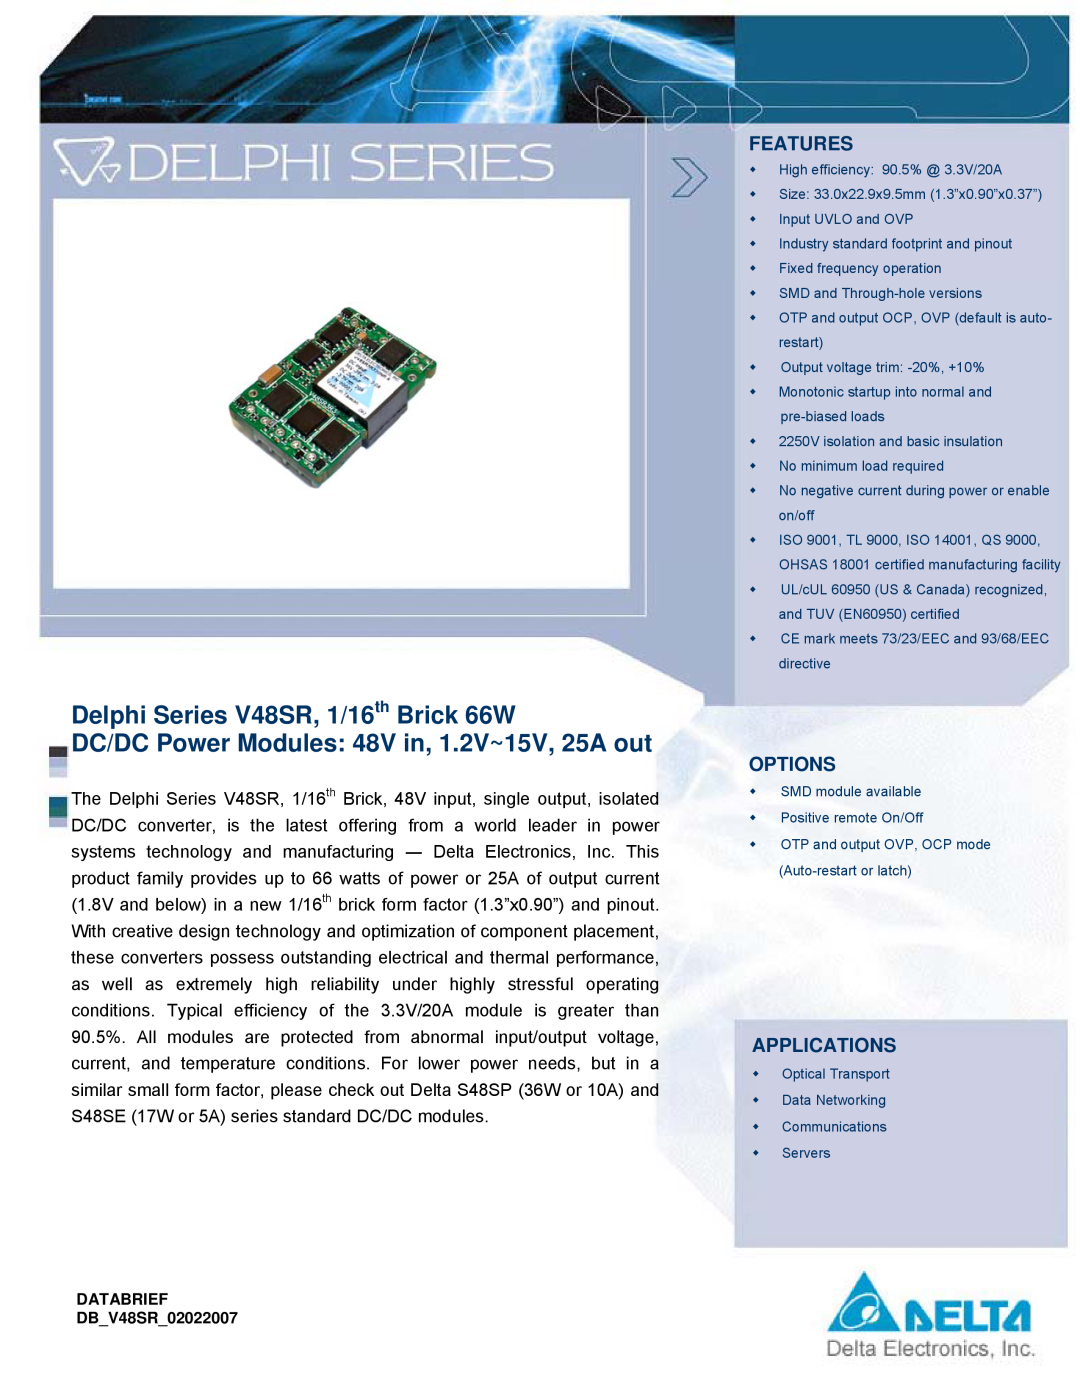 Delta Electronics manual Features, Options, Applications, Delphi Series V48SR, 1/16th Brick 66W 